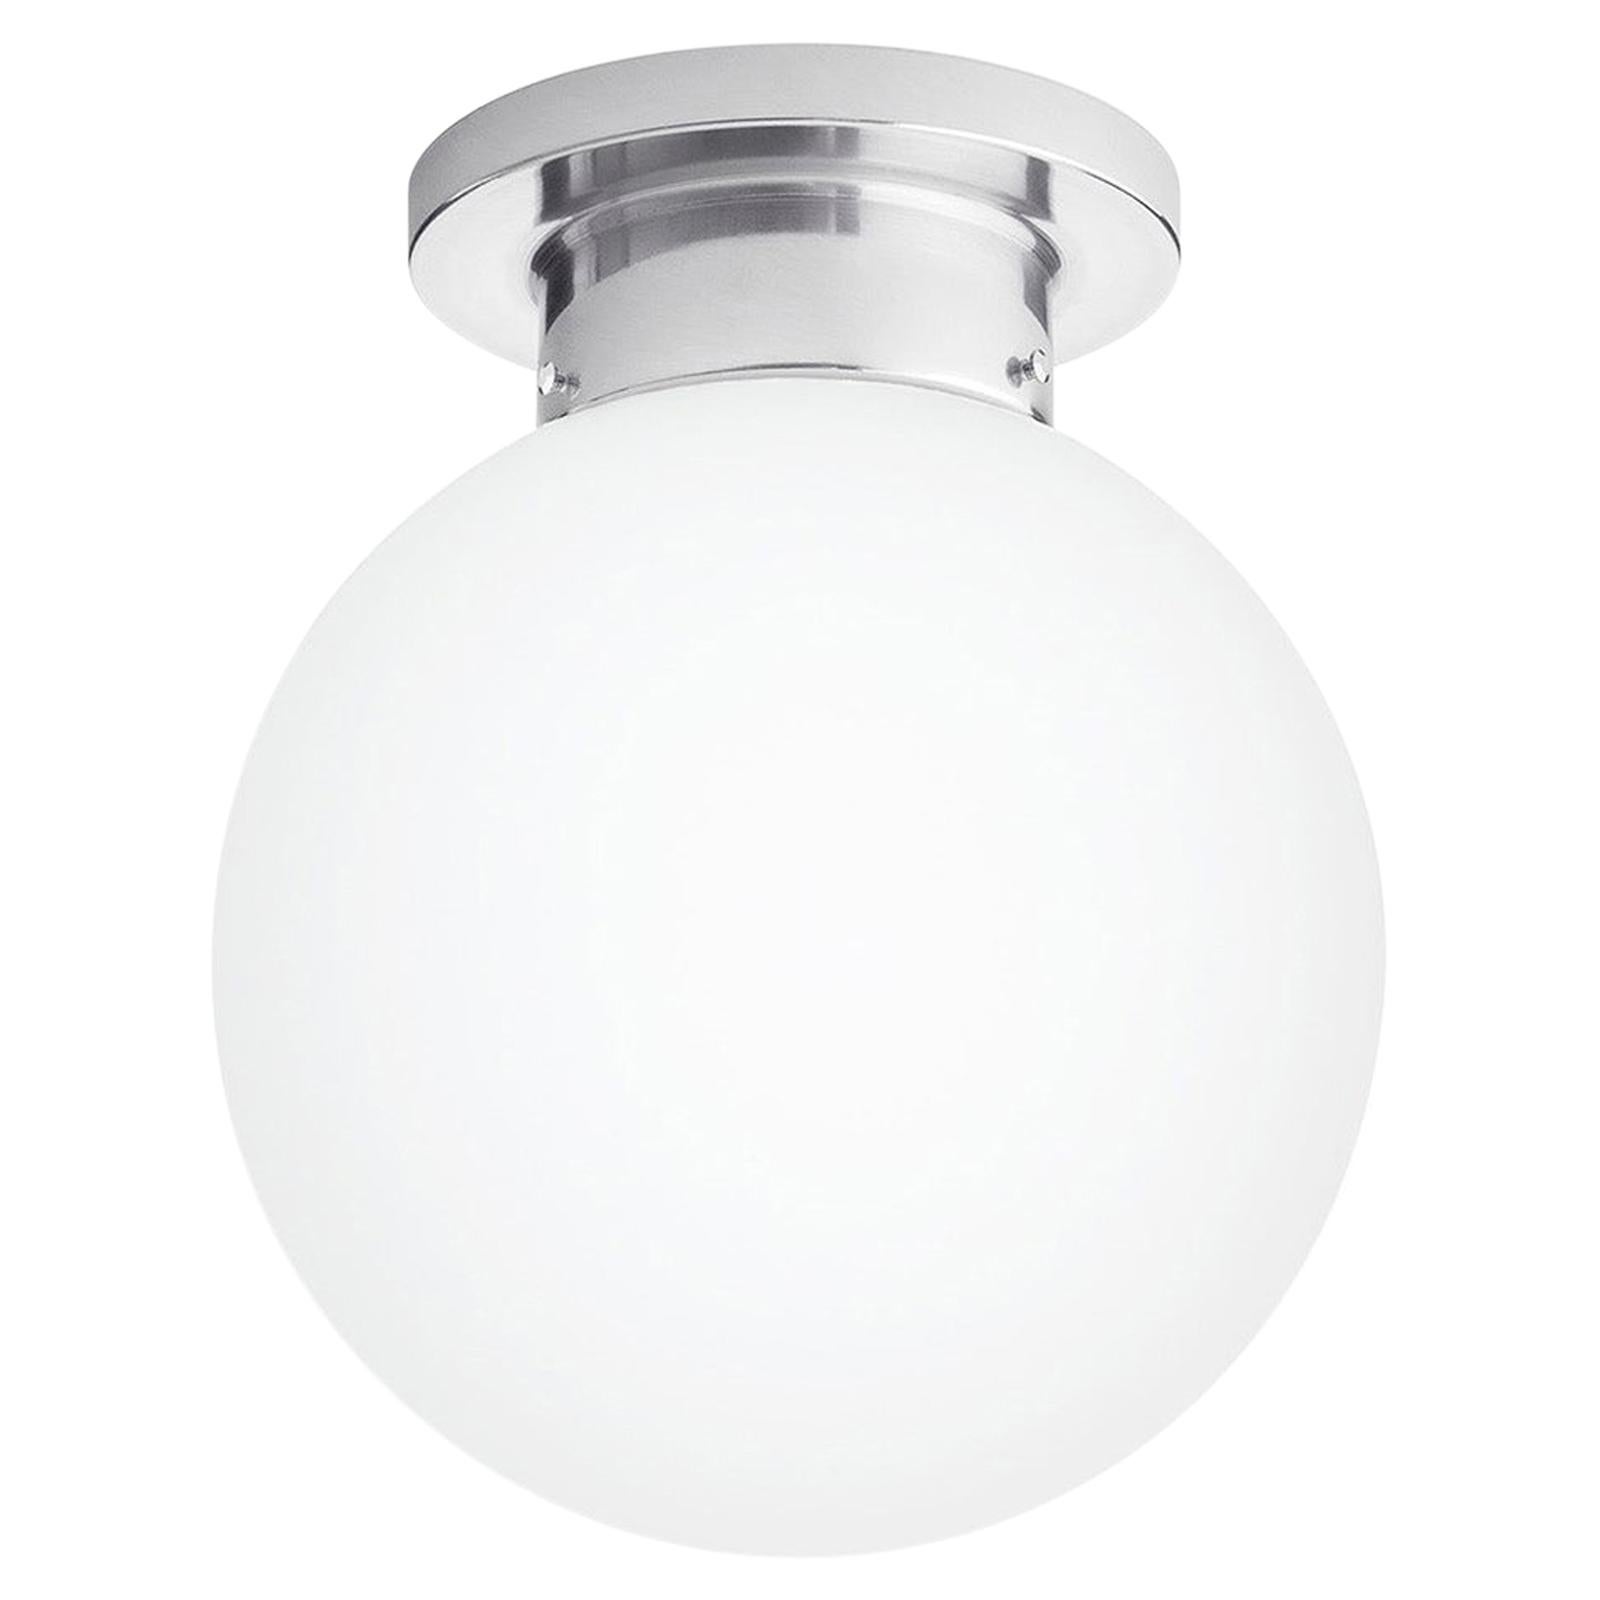 Konsthantverk Globe D25 Aluminum Ceiling Lamp